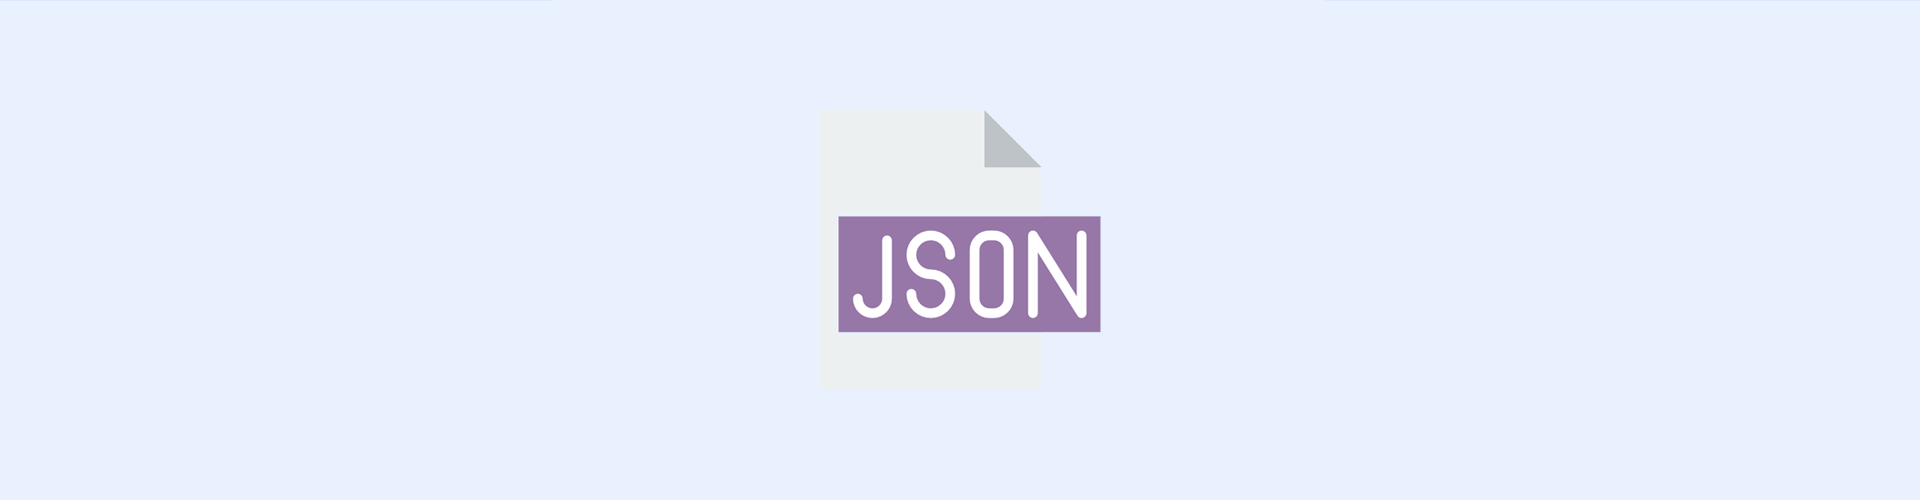 Hostarex blog: JSON nədir və nə üçün istifadə olunur?